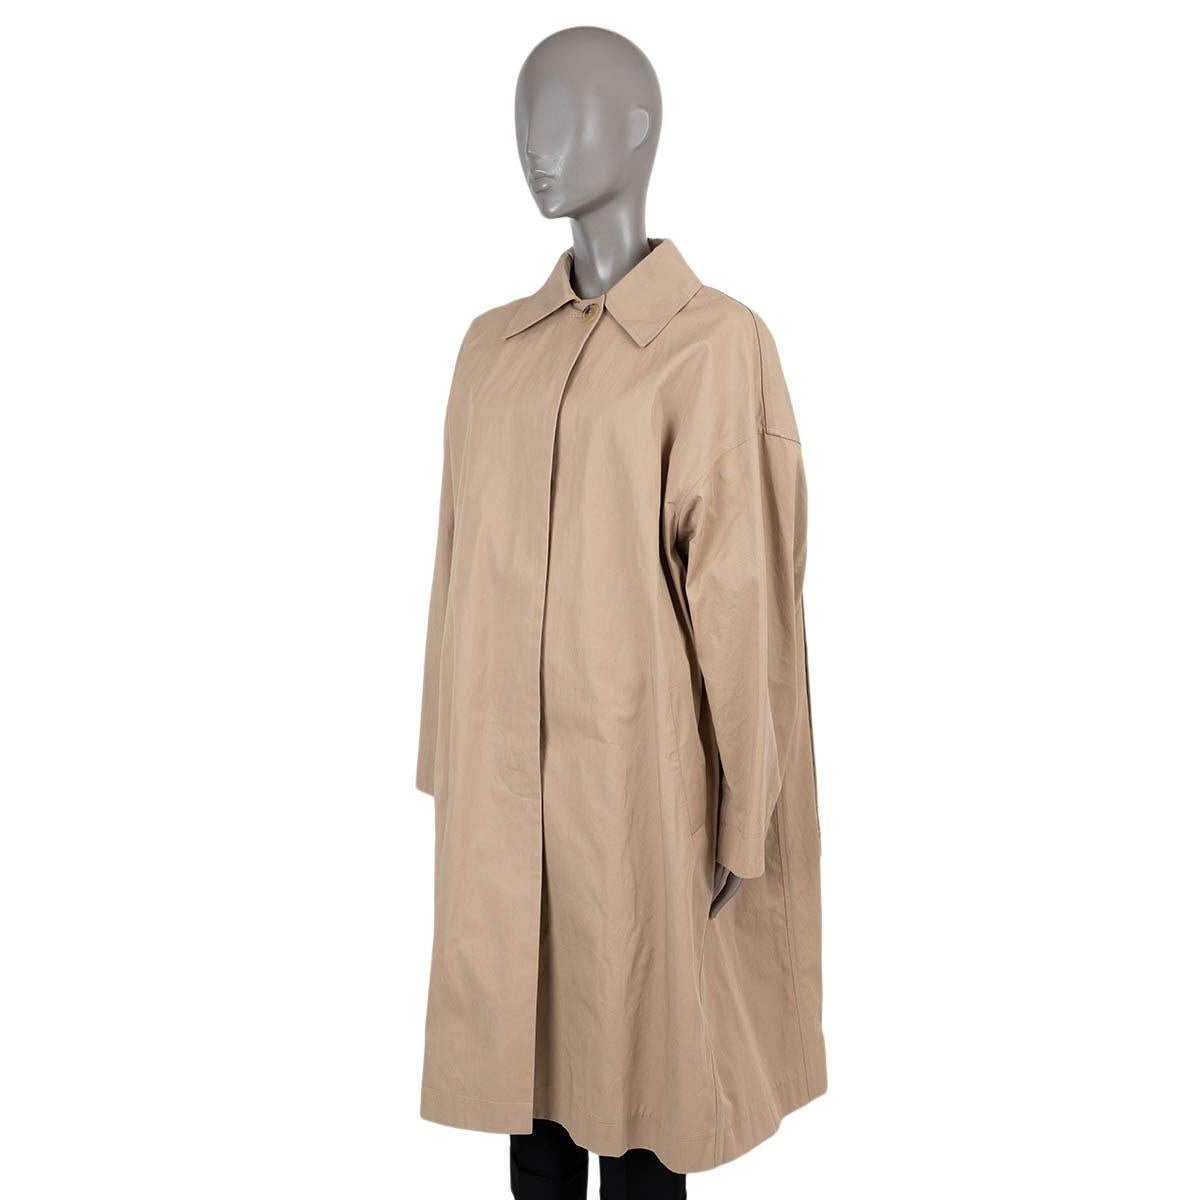 Manteau de pluie surdimensionné en coton gaberdine beige (100%), 100% authentique de Celine by Phoebe Philo. Il présente des épaules tombantes, des manches larges, un col en pointe, deux poches en biais à la taille et un rabat-tempête avec anneau en